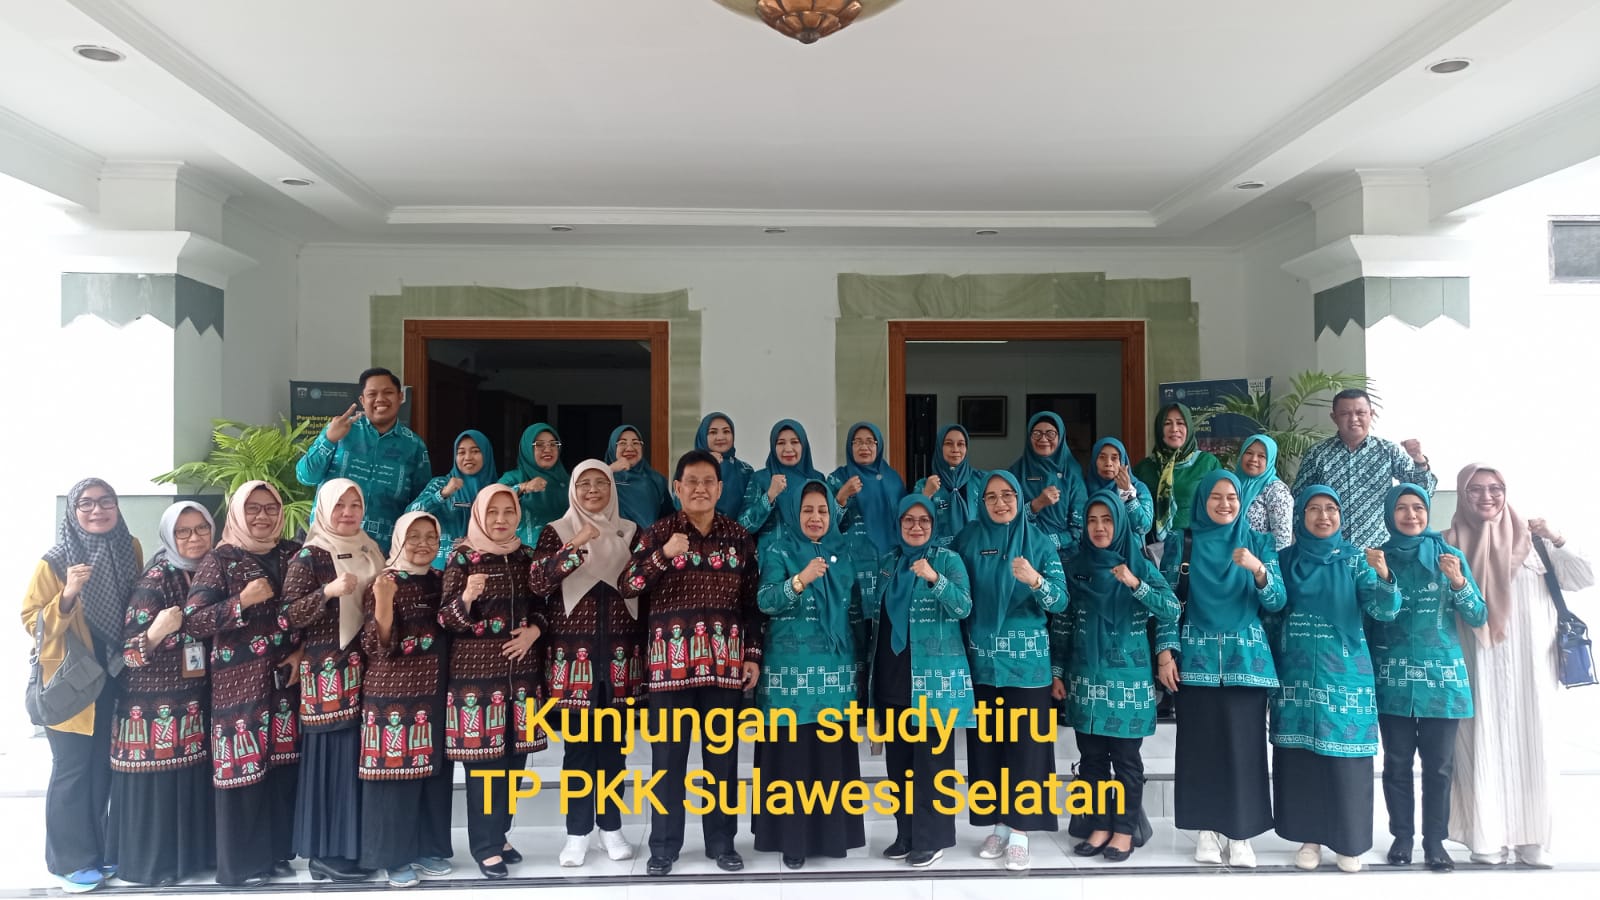 Kunjungan Studi Tiru dari Tim Penggerak PKK Sulawesi Selatan